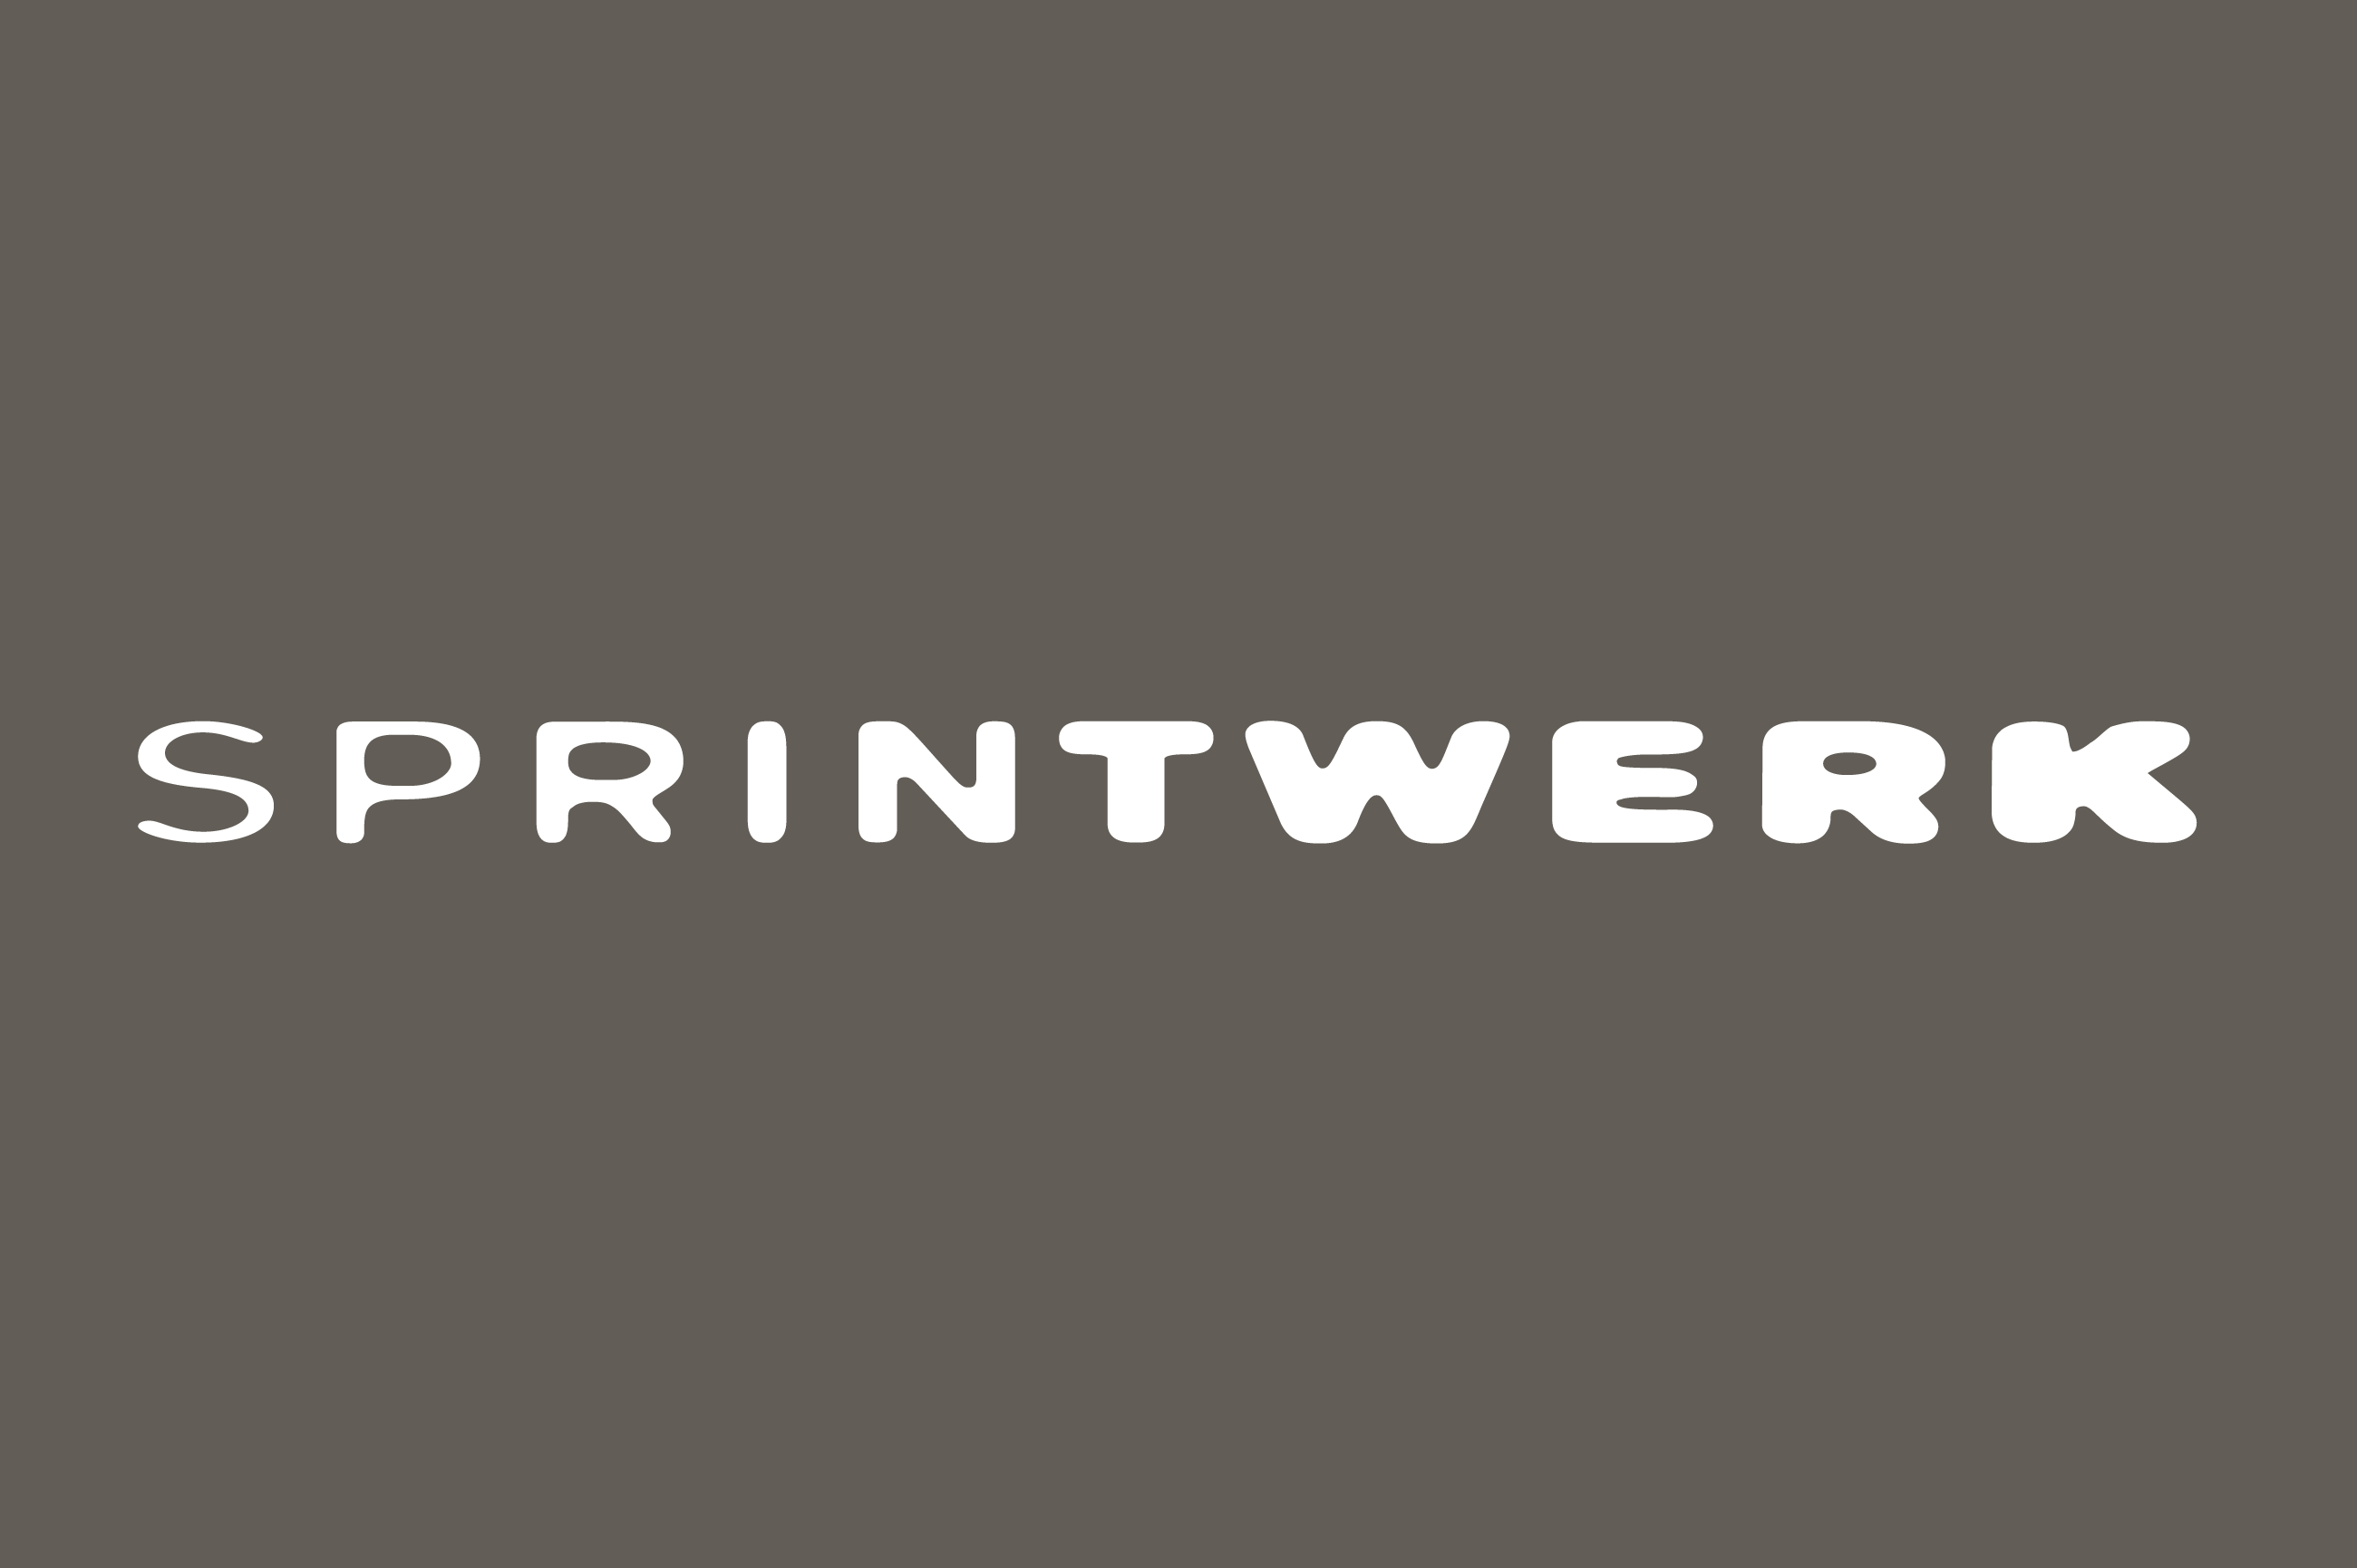 Sprintwerk – Signet/Logotype